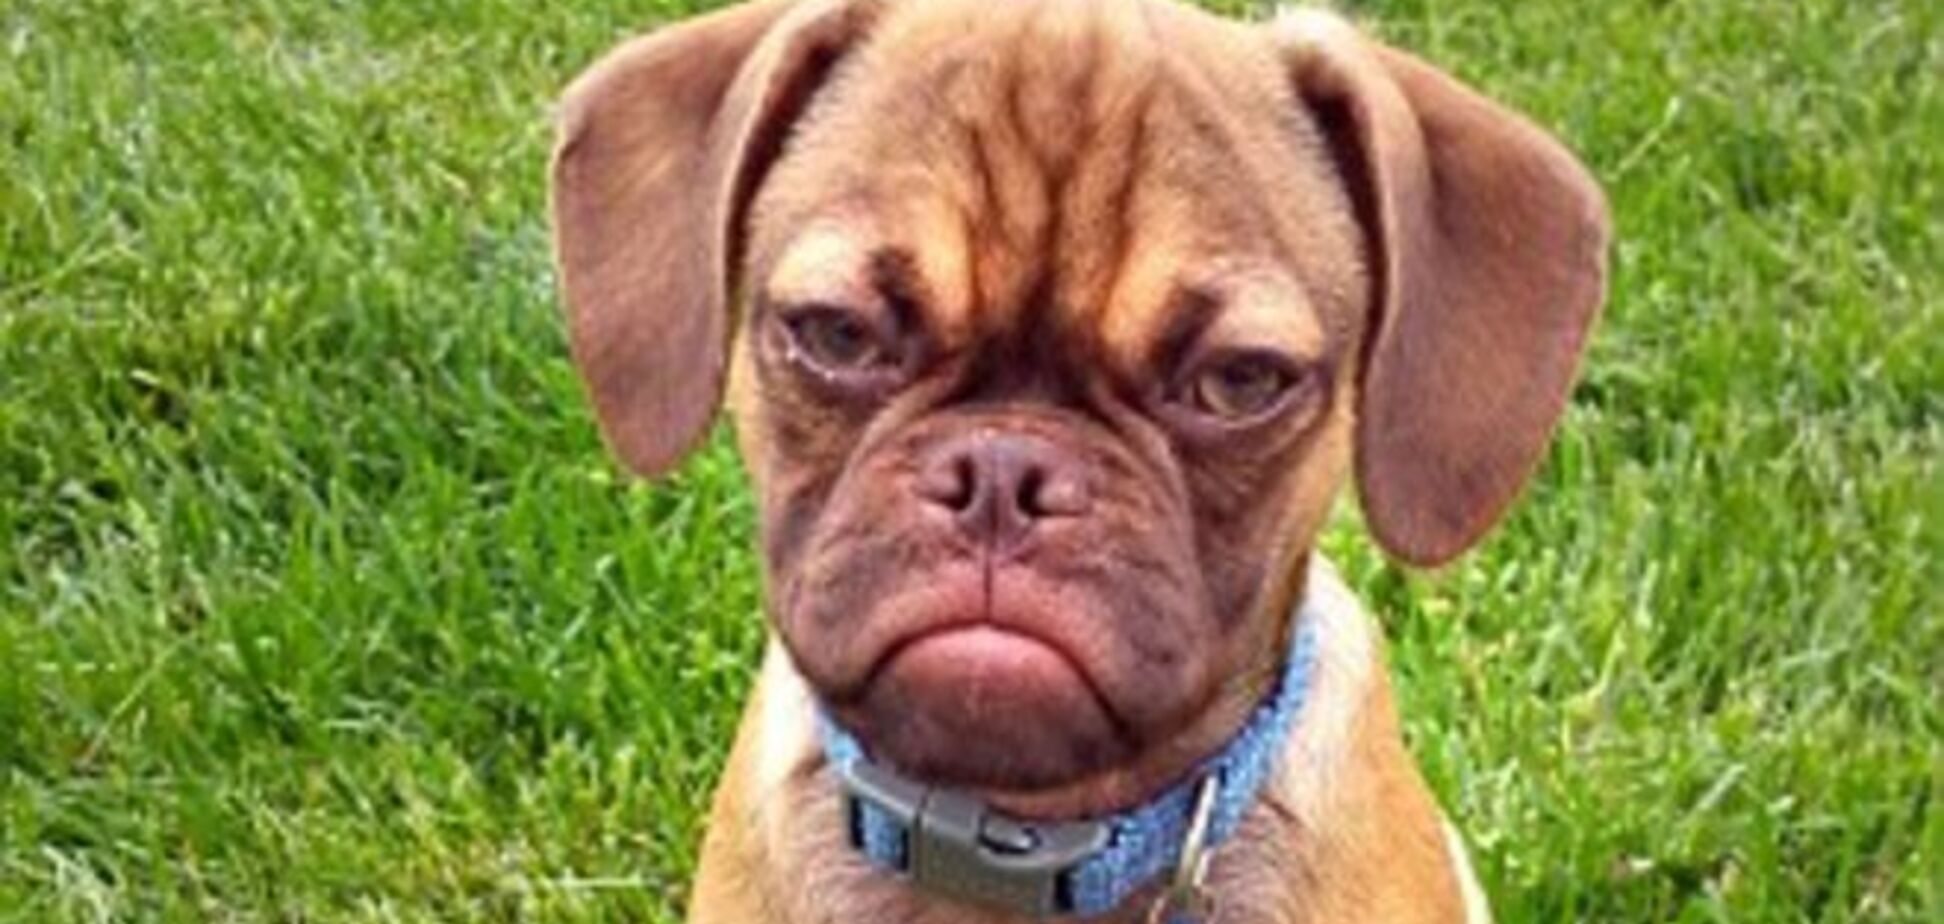 Интернет покорил самый грустный пес: опубликованы фото